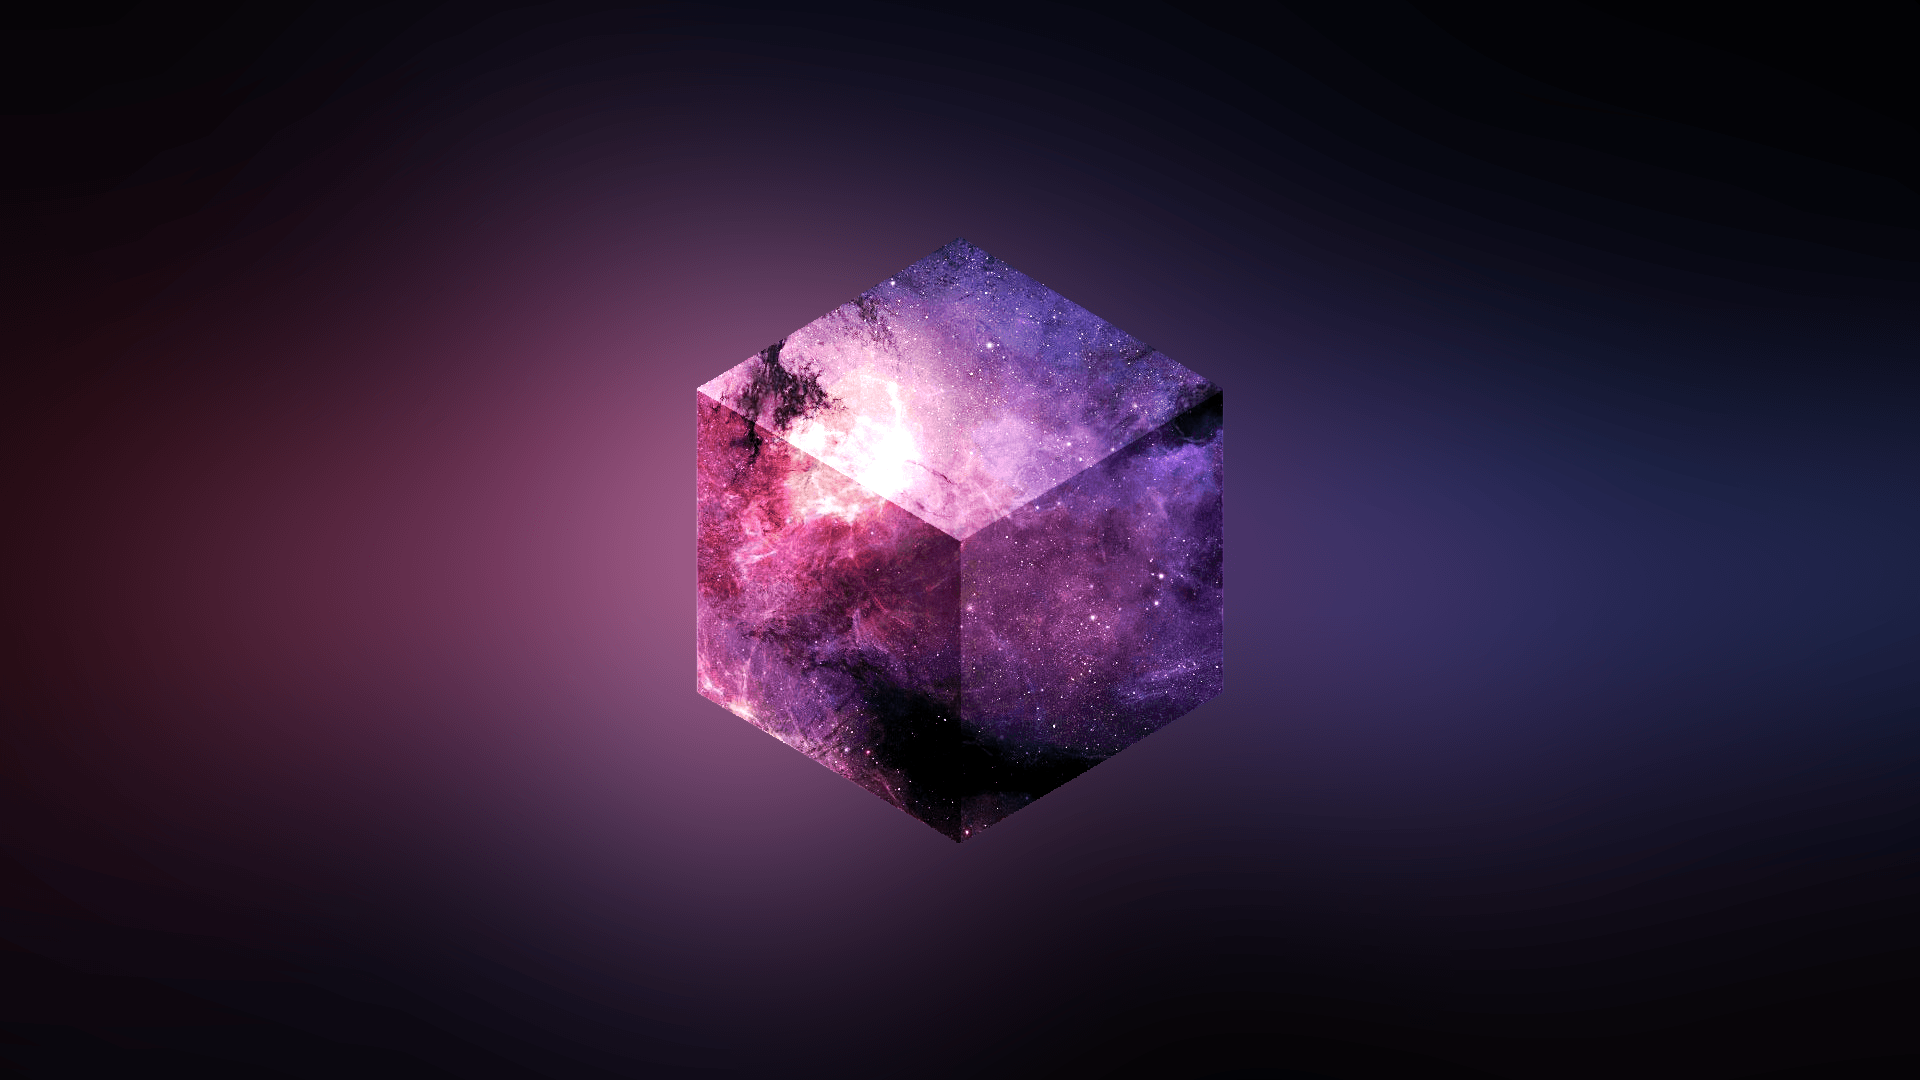 Galaxcube